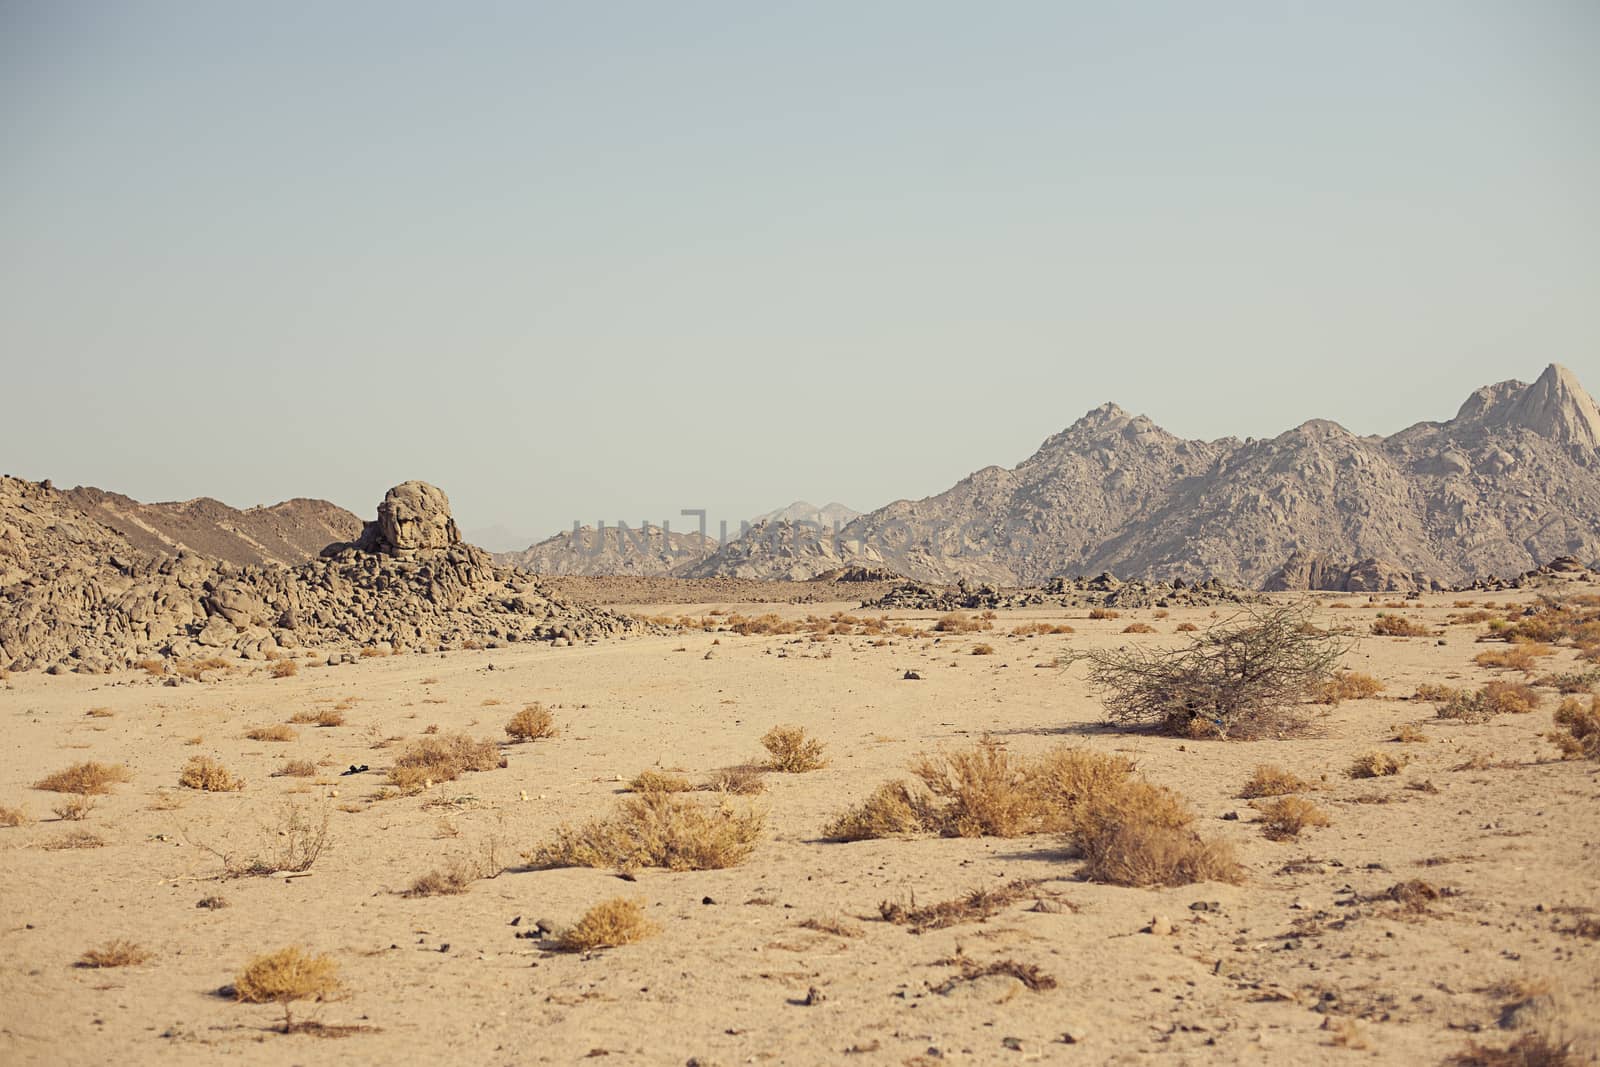 Mountain in desert by Vanzyst